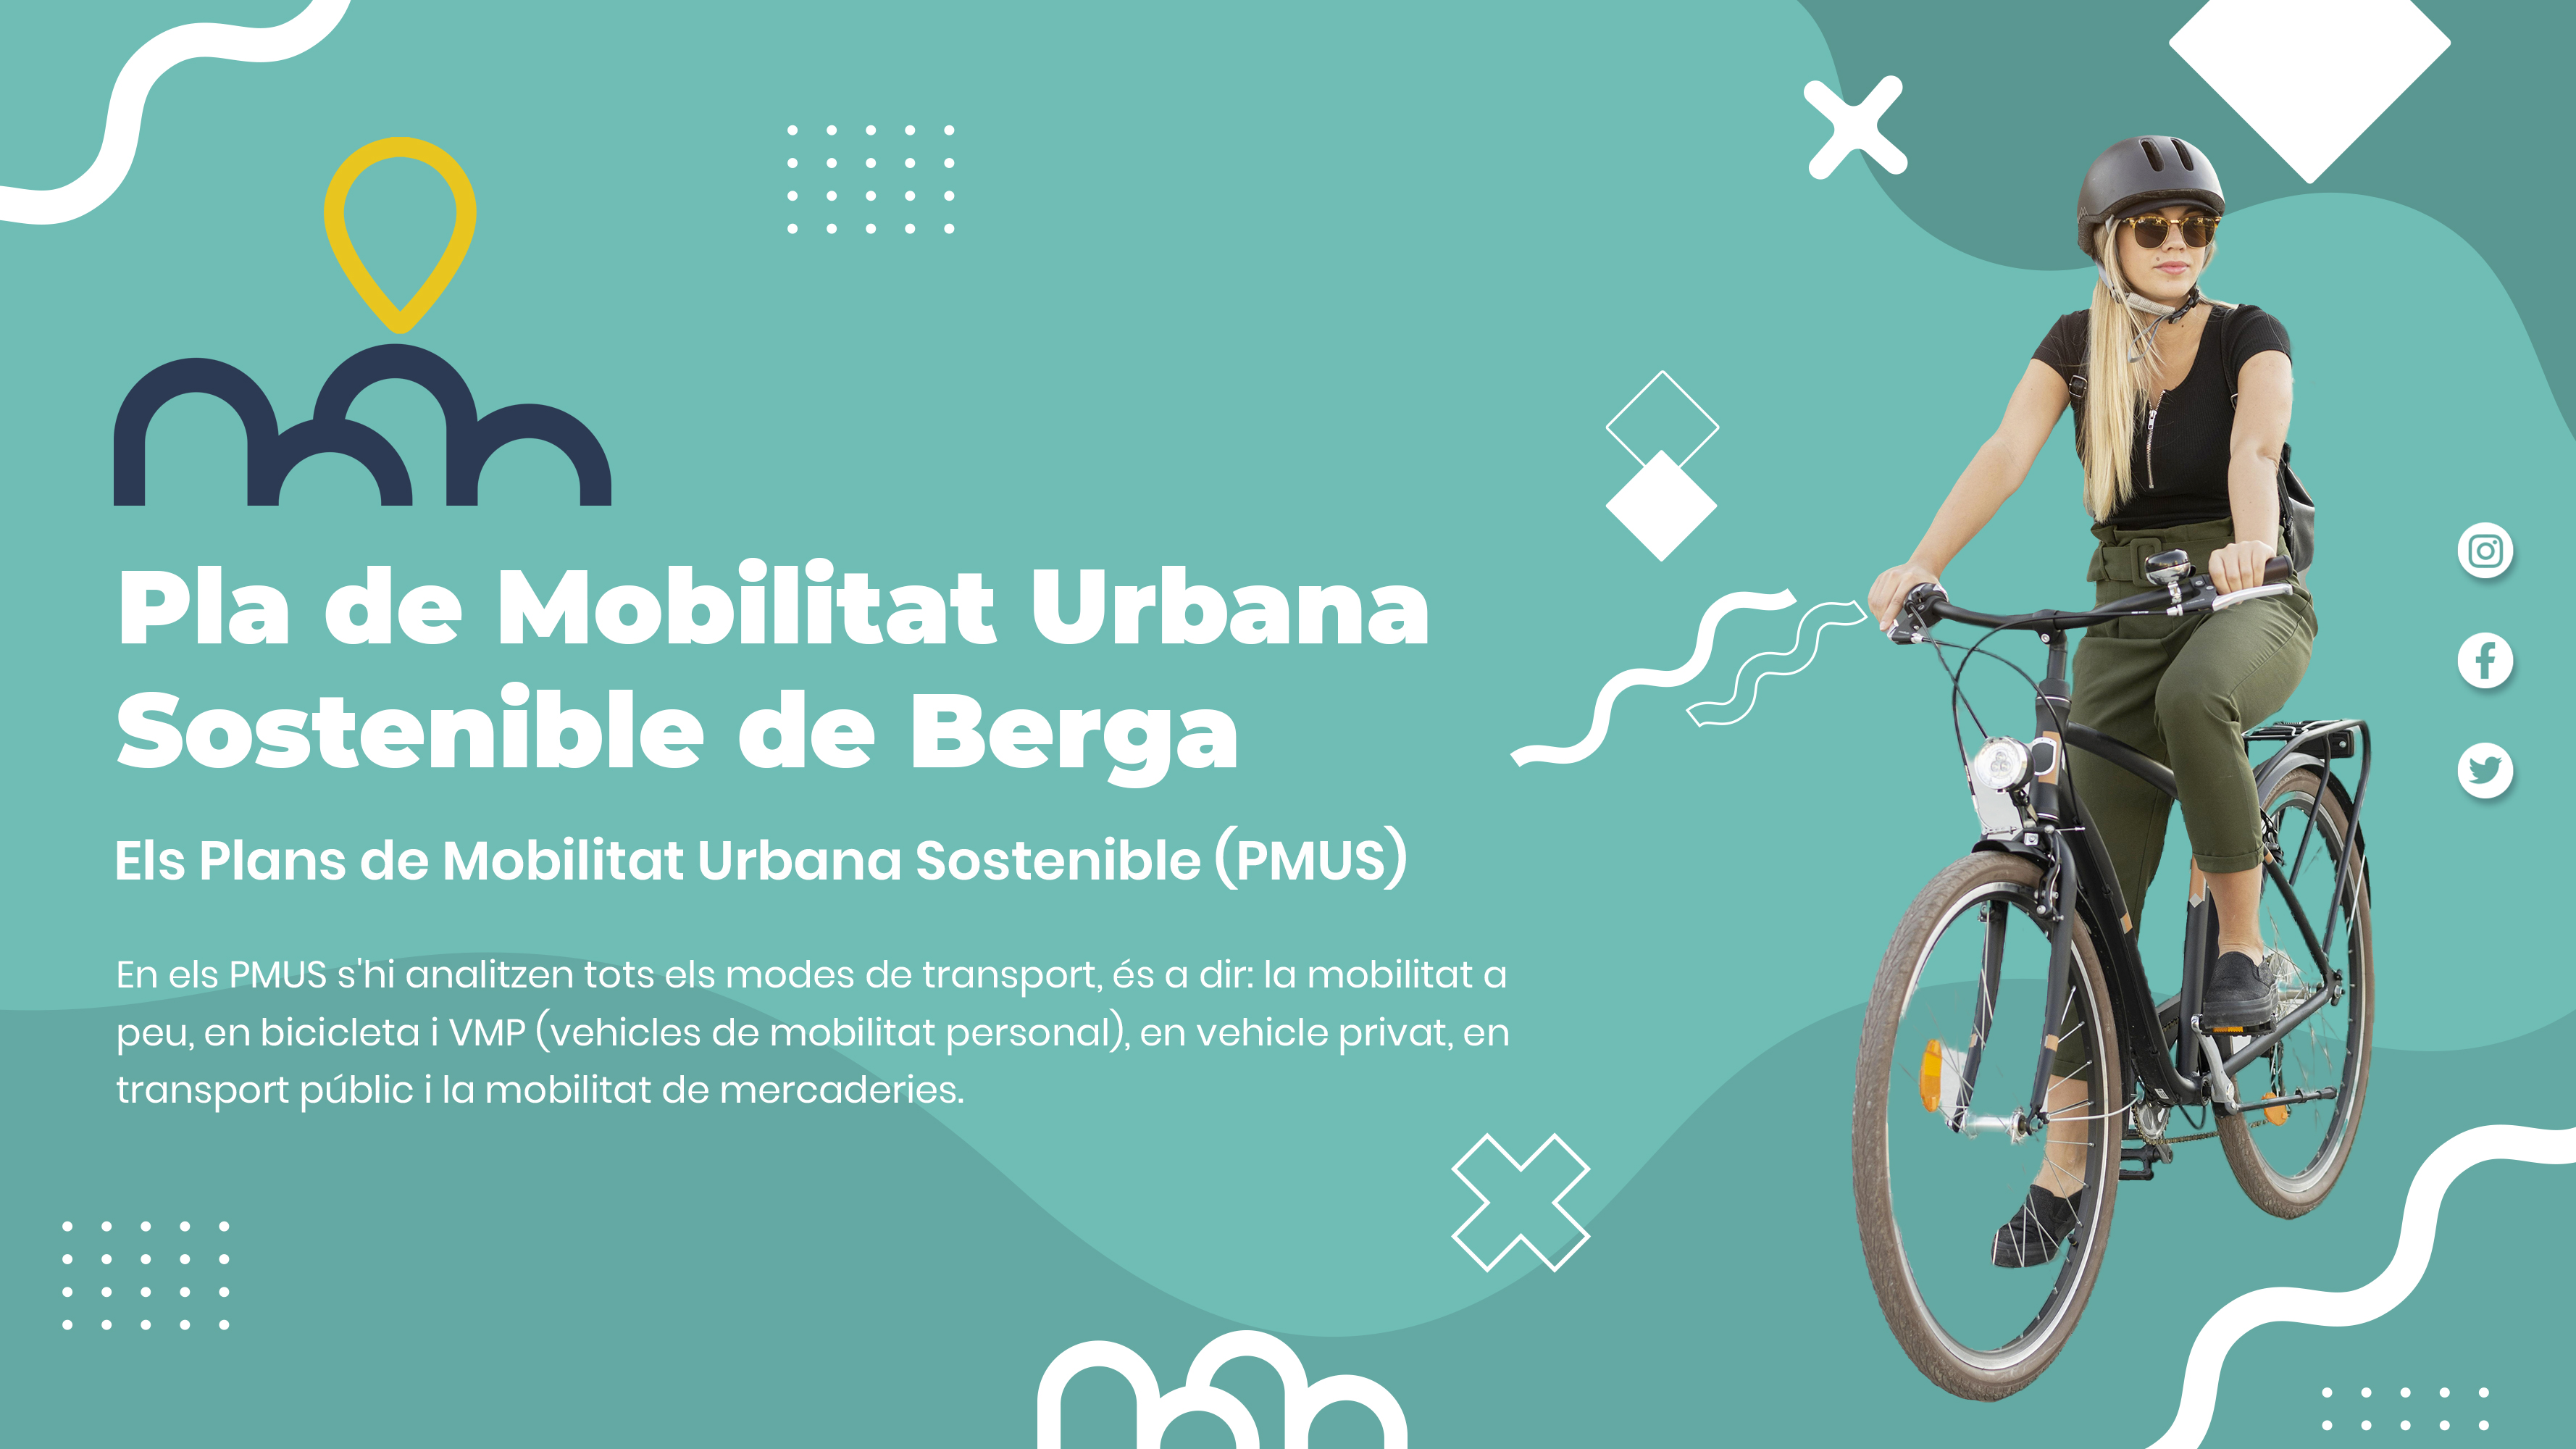 Pla de Mobilitat Urbana Sostenible de Berga (PMUS)